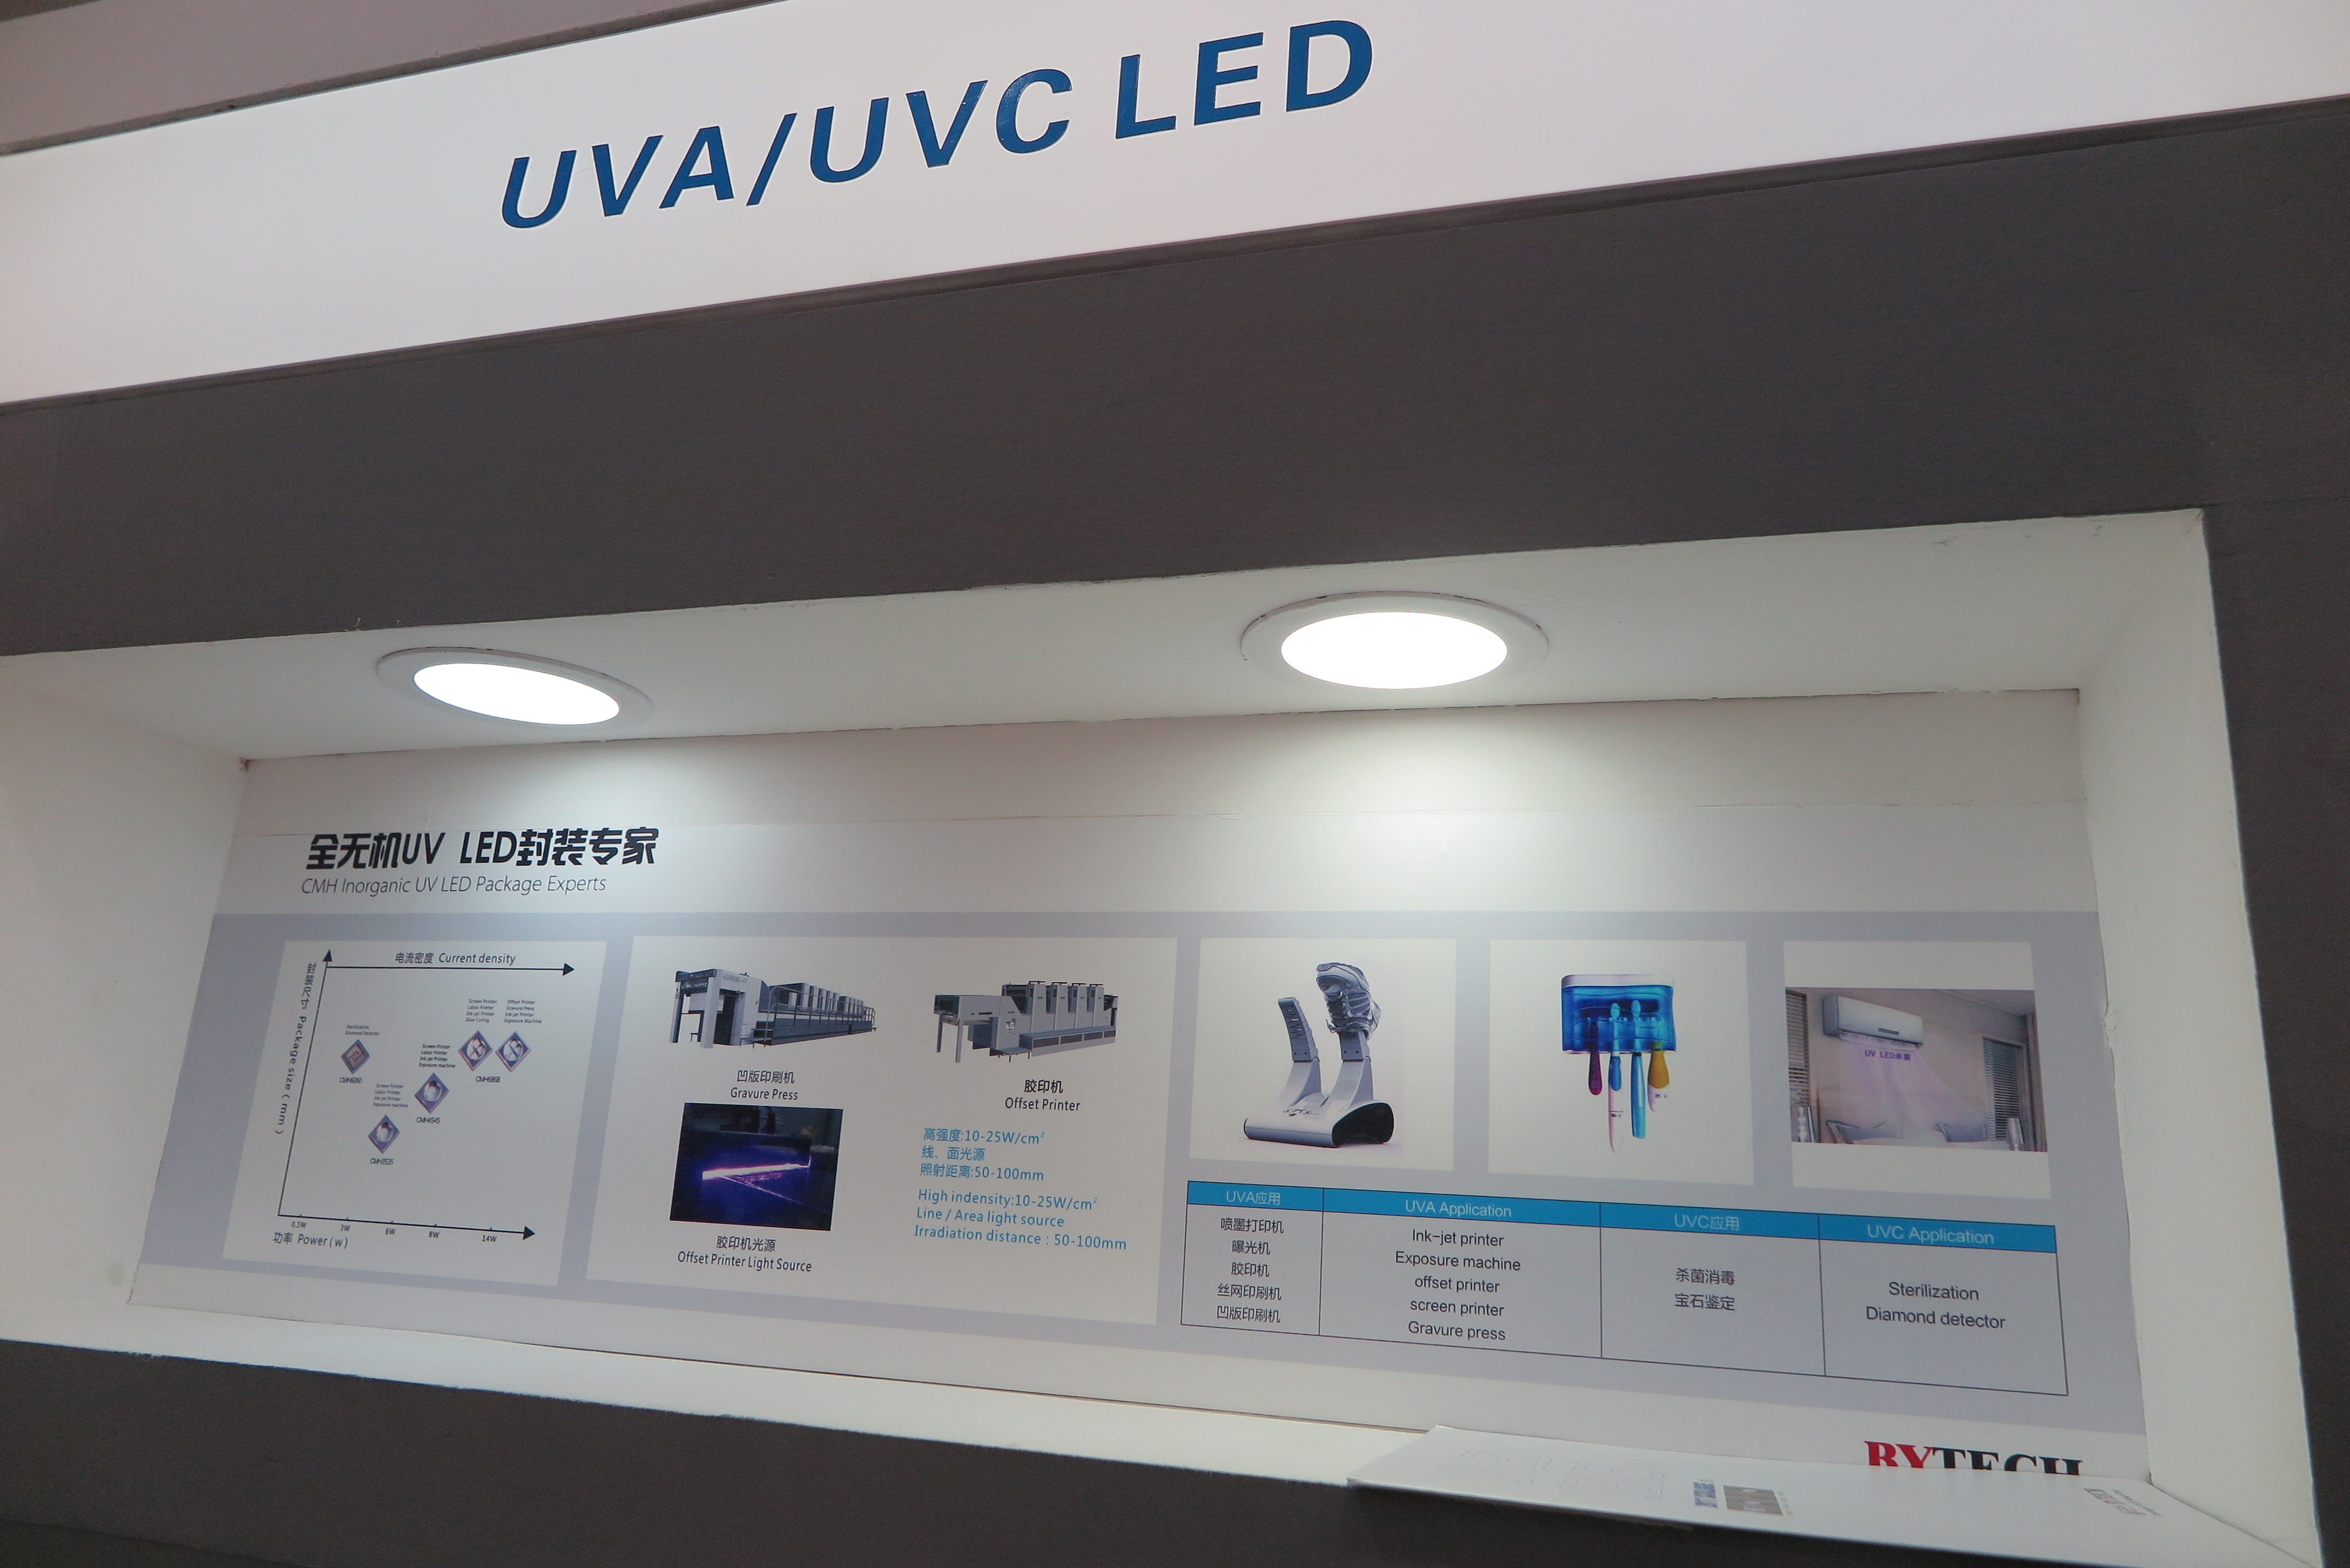 Quy mô thị trường trình điều khiển LED UV-C